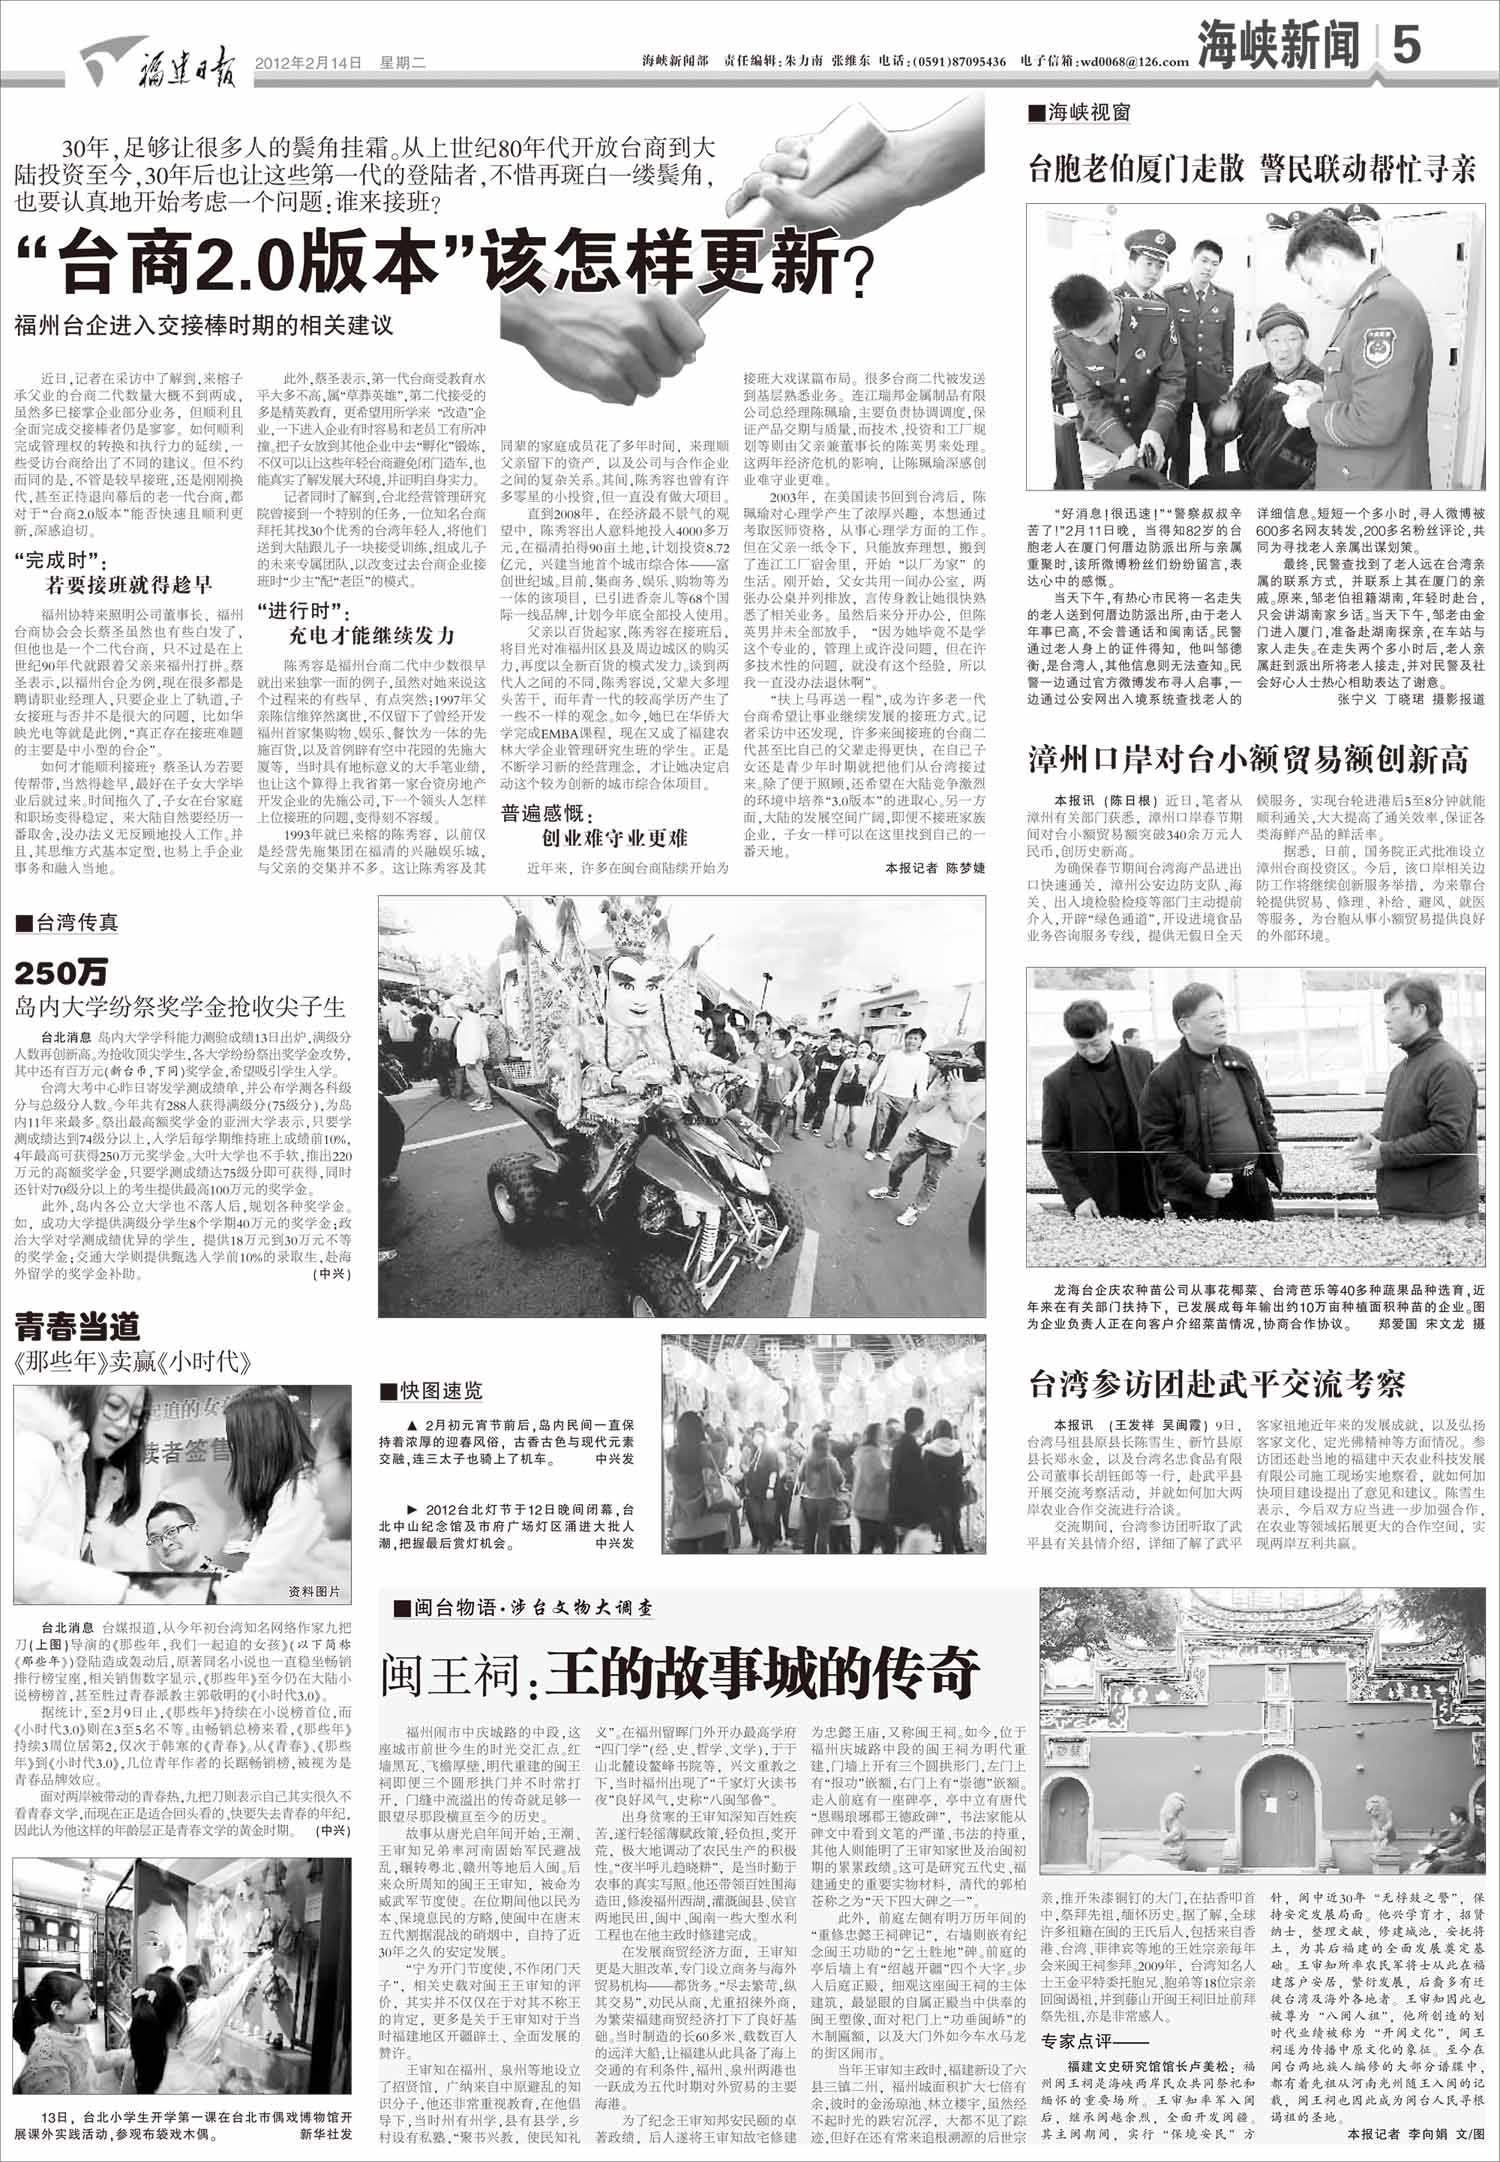 关于拟报送参评第二十三届中国新闻奖新闻作品的公示